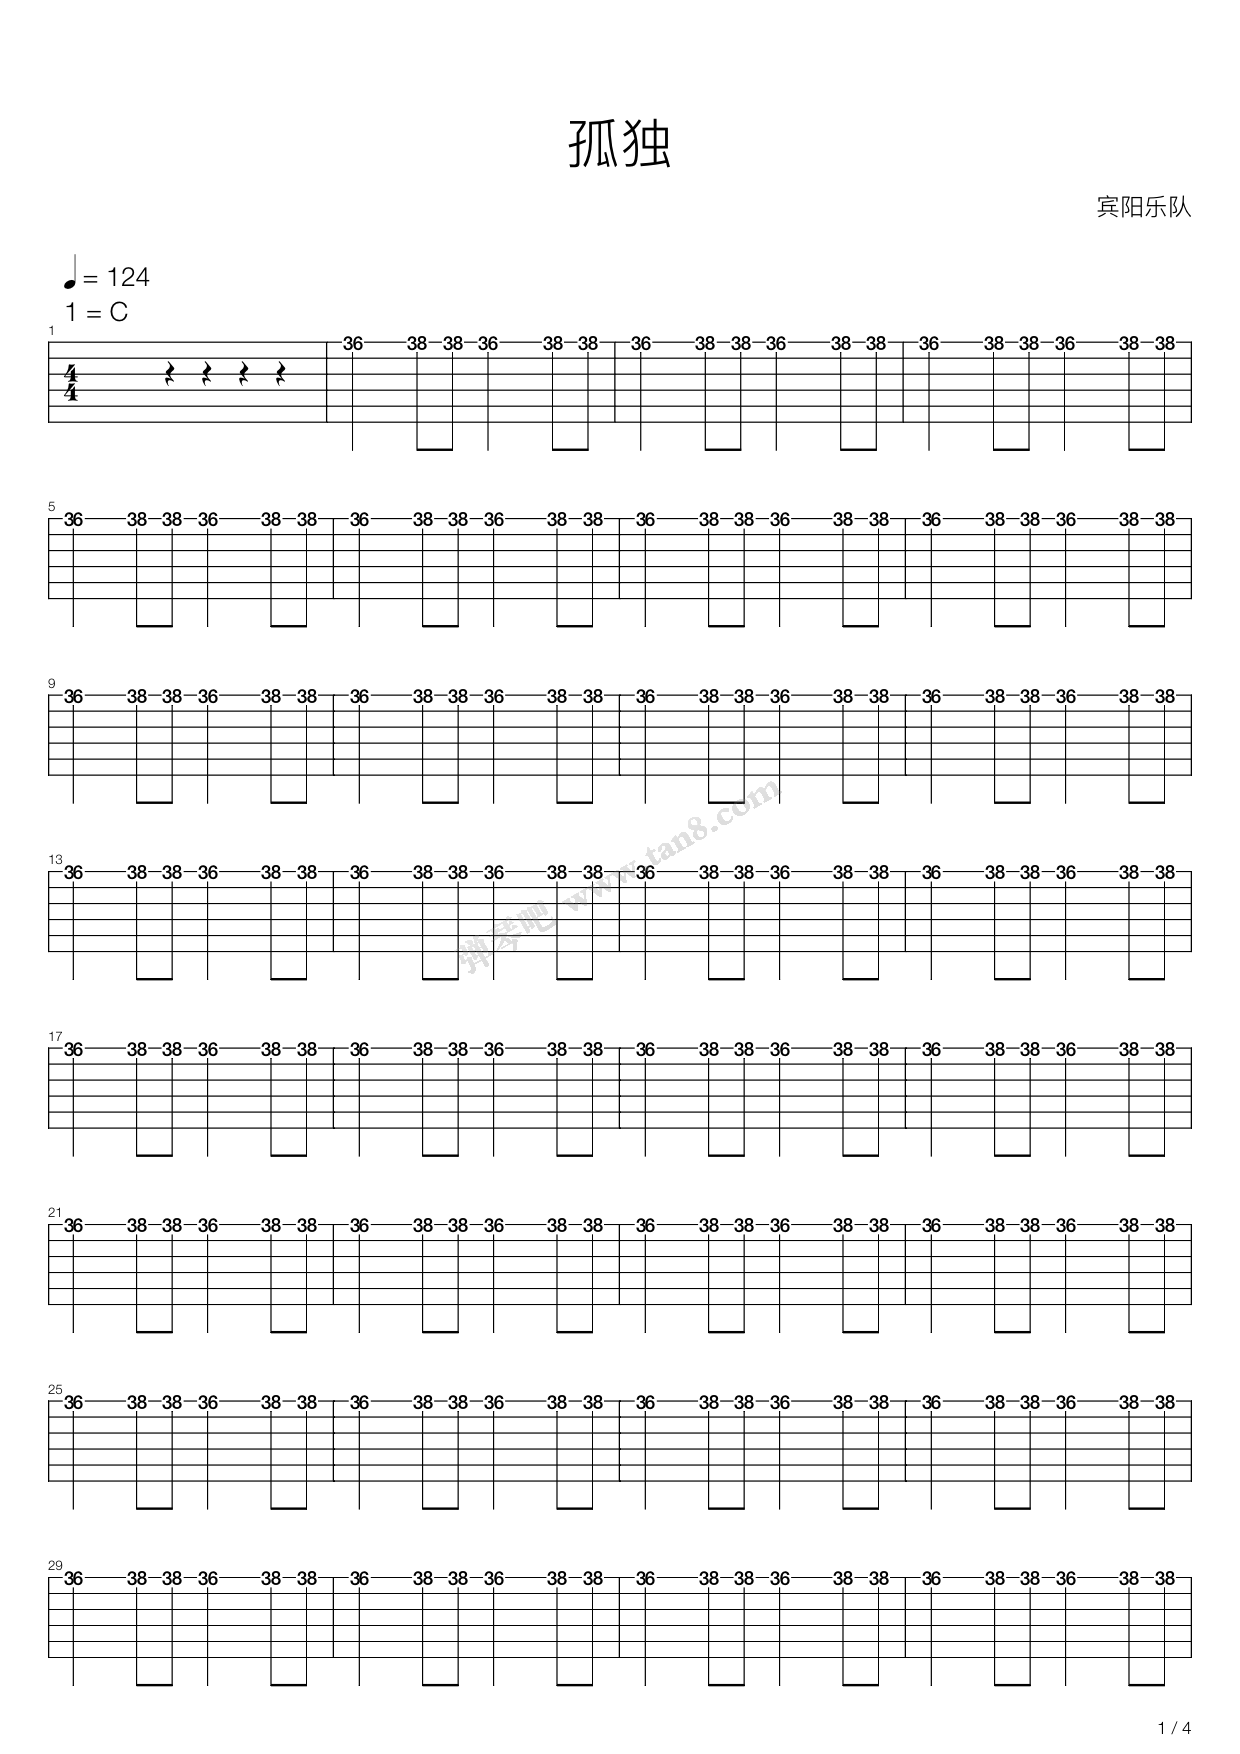 《十一种孤独》吉他谱 - 用弹唱节奏型编配 -选调C调 - 宿羽阳六线谱精选 - 国语 - 易谱库